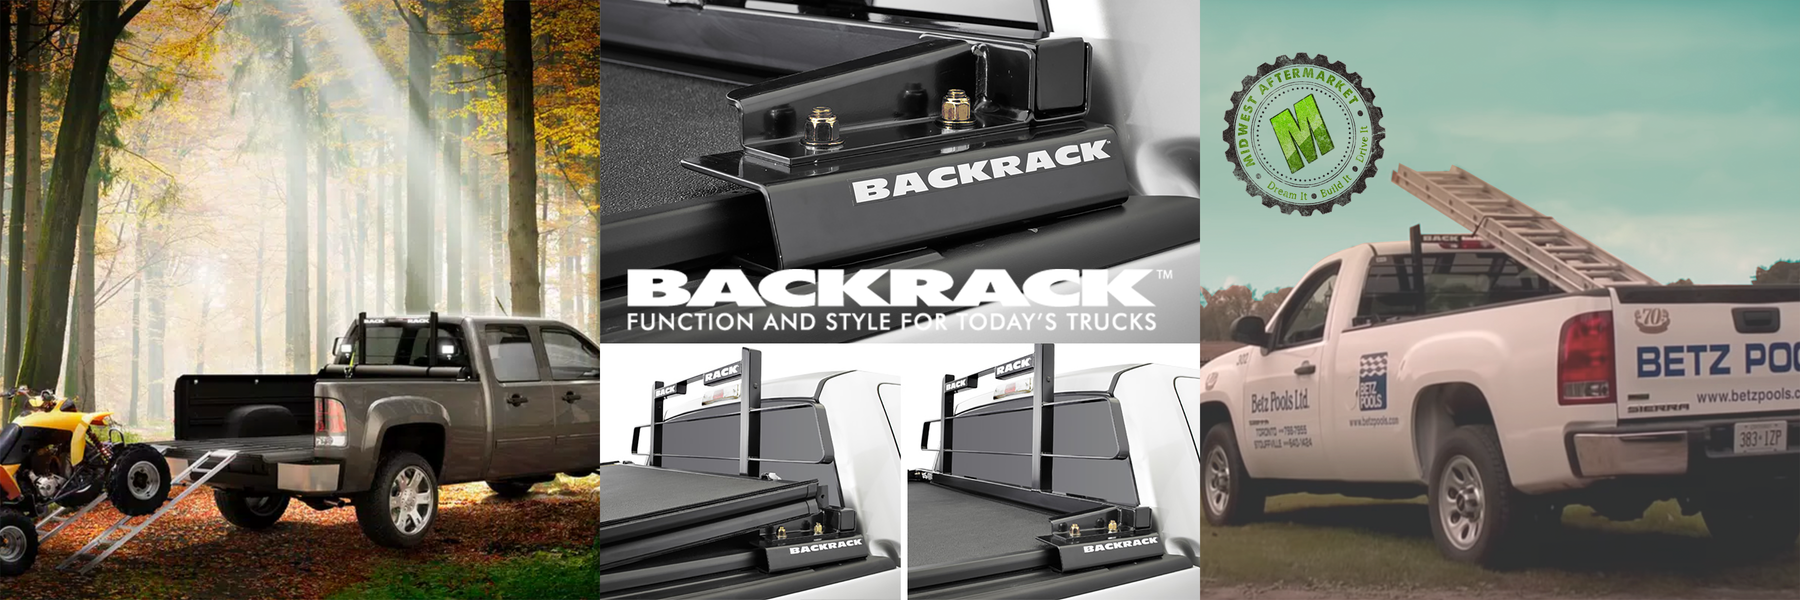 BACKRACK Truck Headache Rack